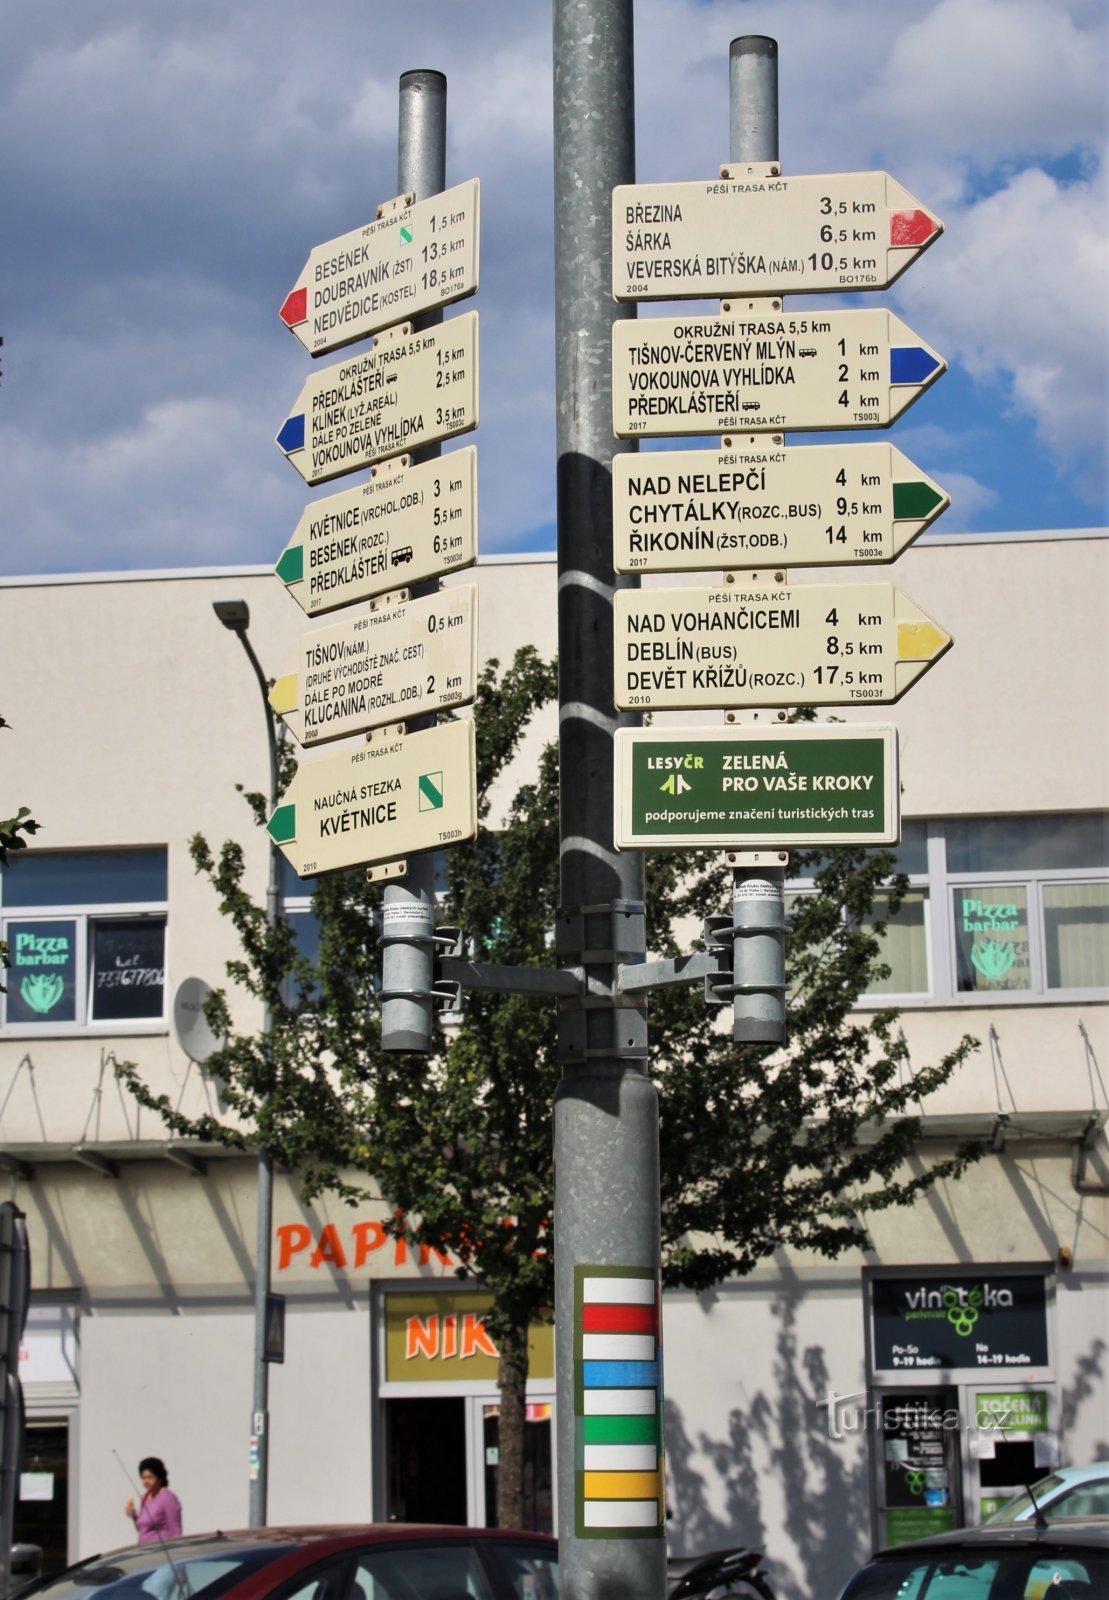 Μπροστά από το κτίριο του σταθμού υπάρχει τουριστικός οδηγός διπλής όψης και στα τέσσερα χρώματα